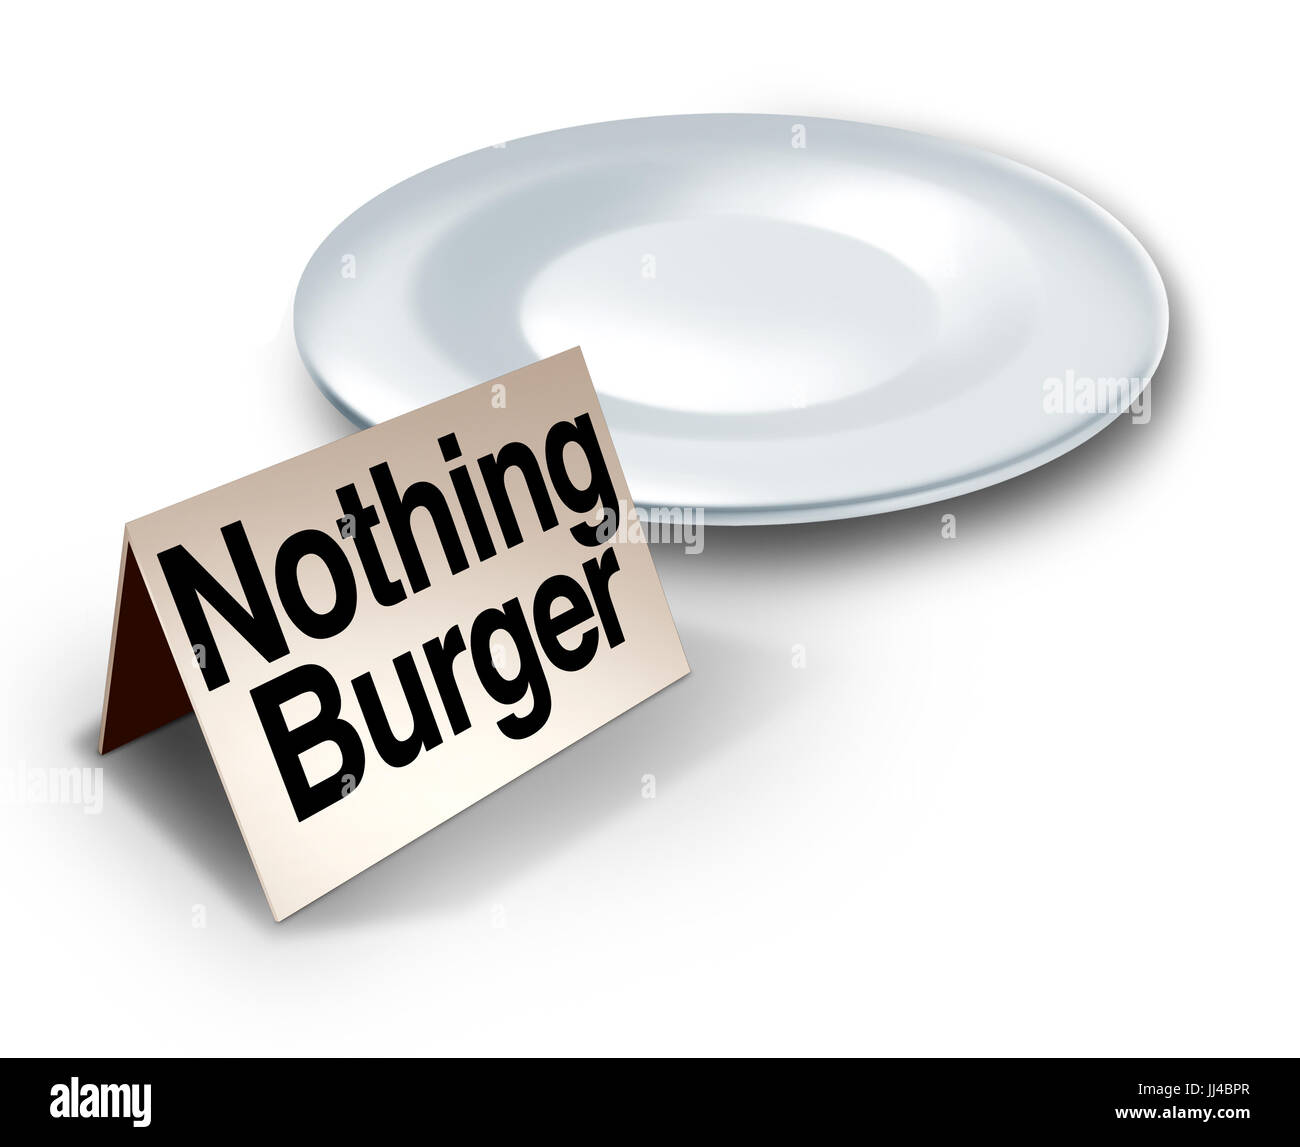 Nada burger o frase nothingburger concepto como un plato vacío con texto en una etiqueta que representa noticias falsas o insignificantes, medios de investigación. Foto de stock